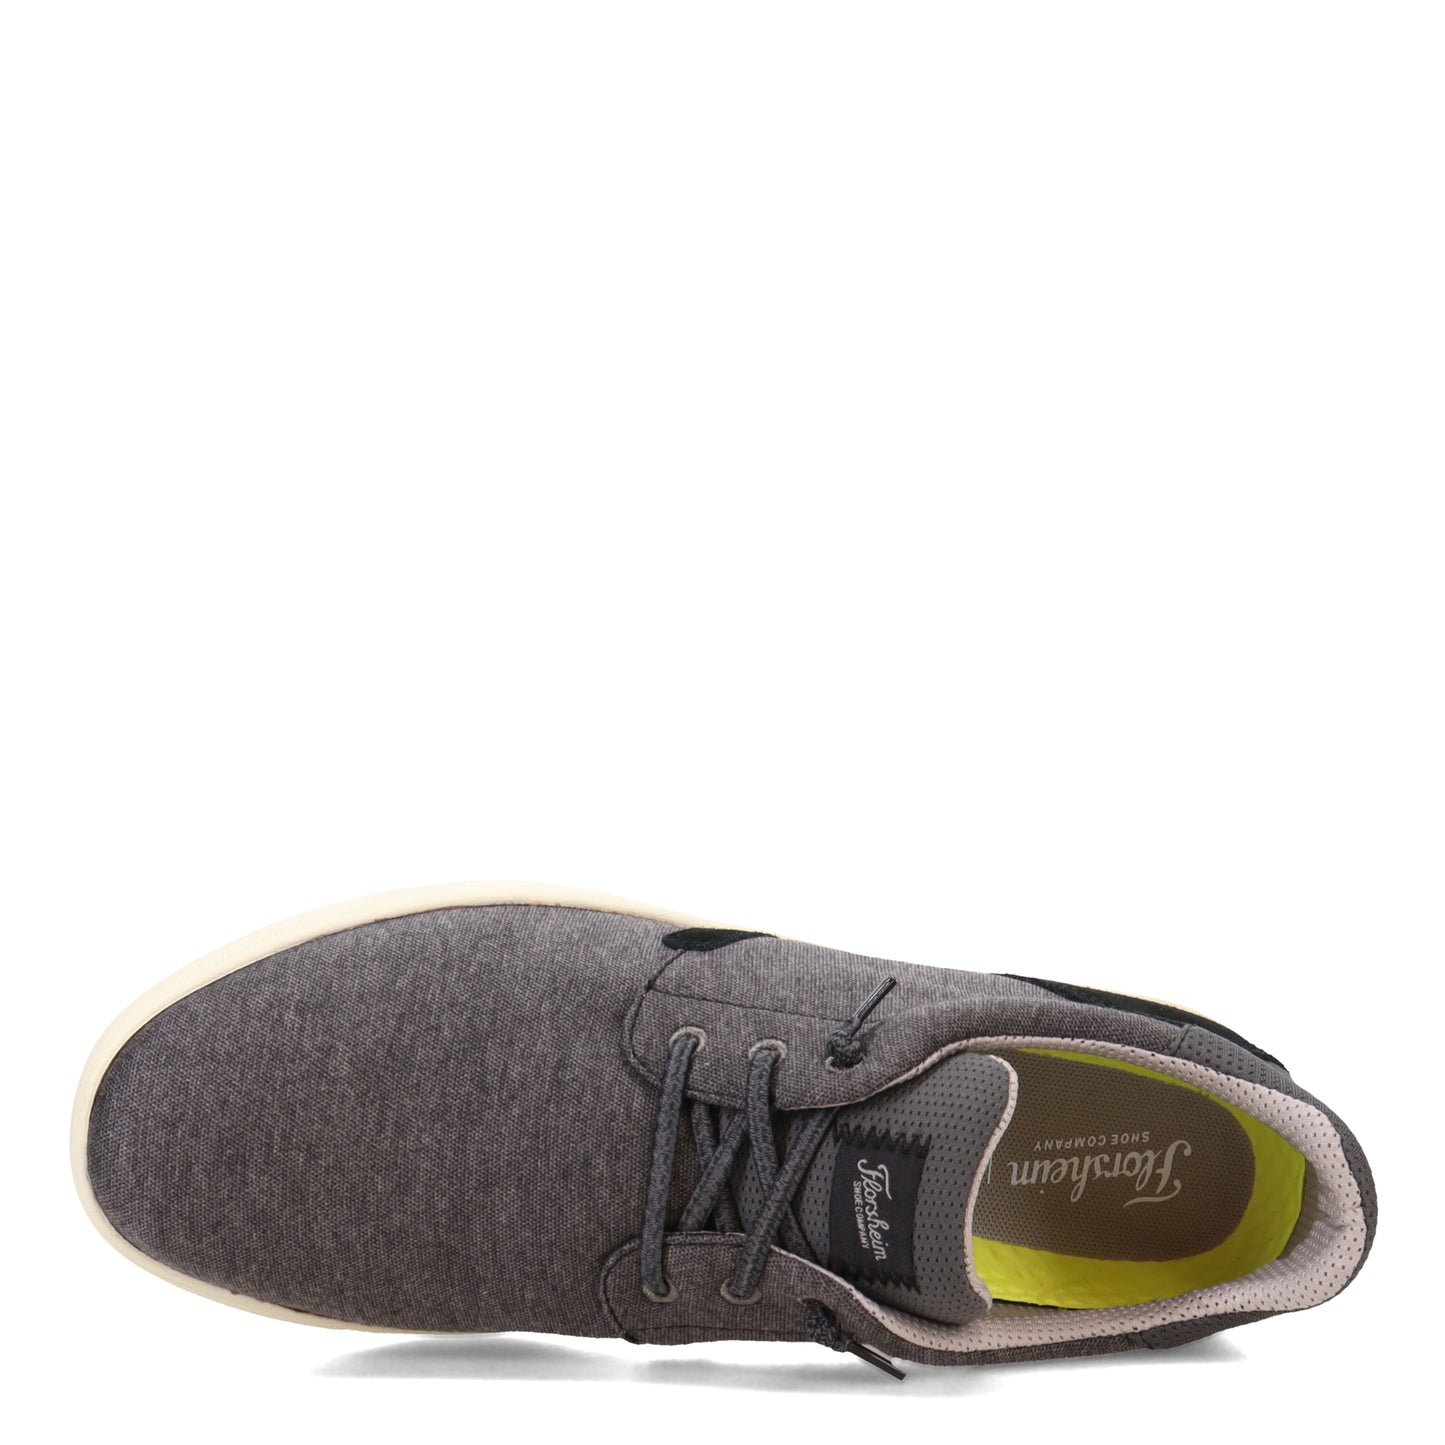 Peltz Shoes  Men's Florsheim Crossover Lace Slip-On Sneaker Black 14405-001